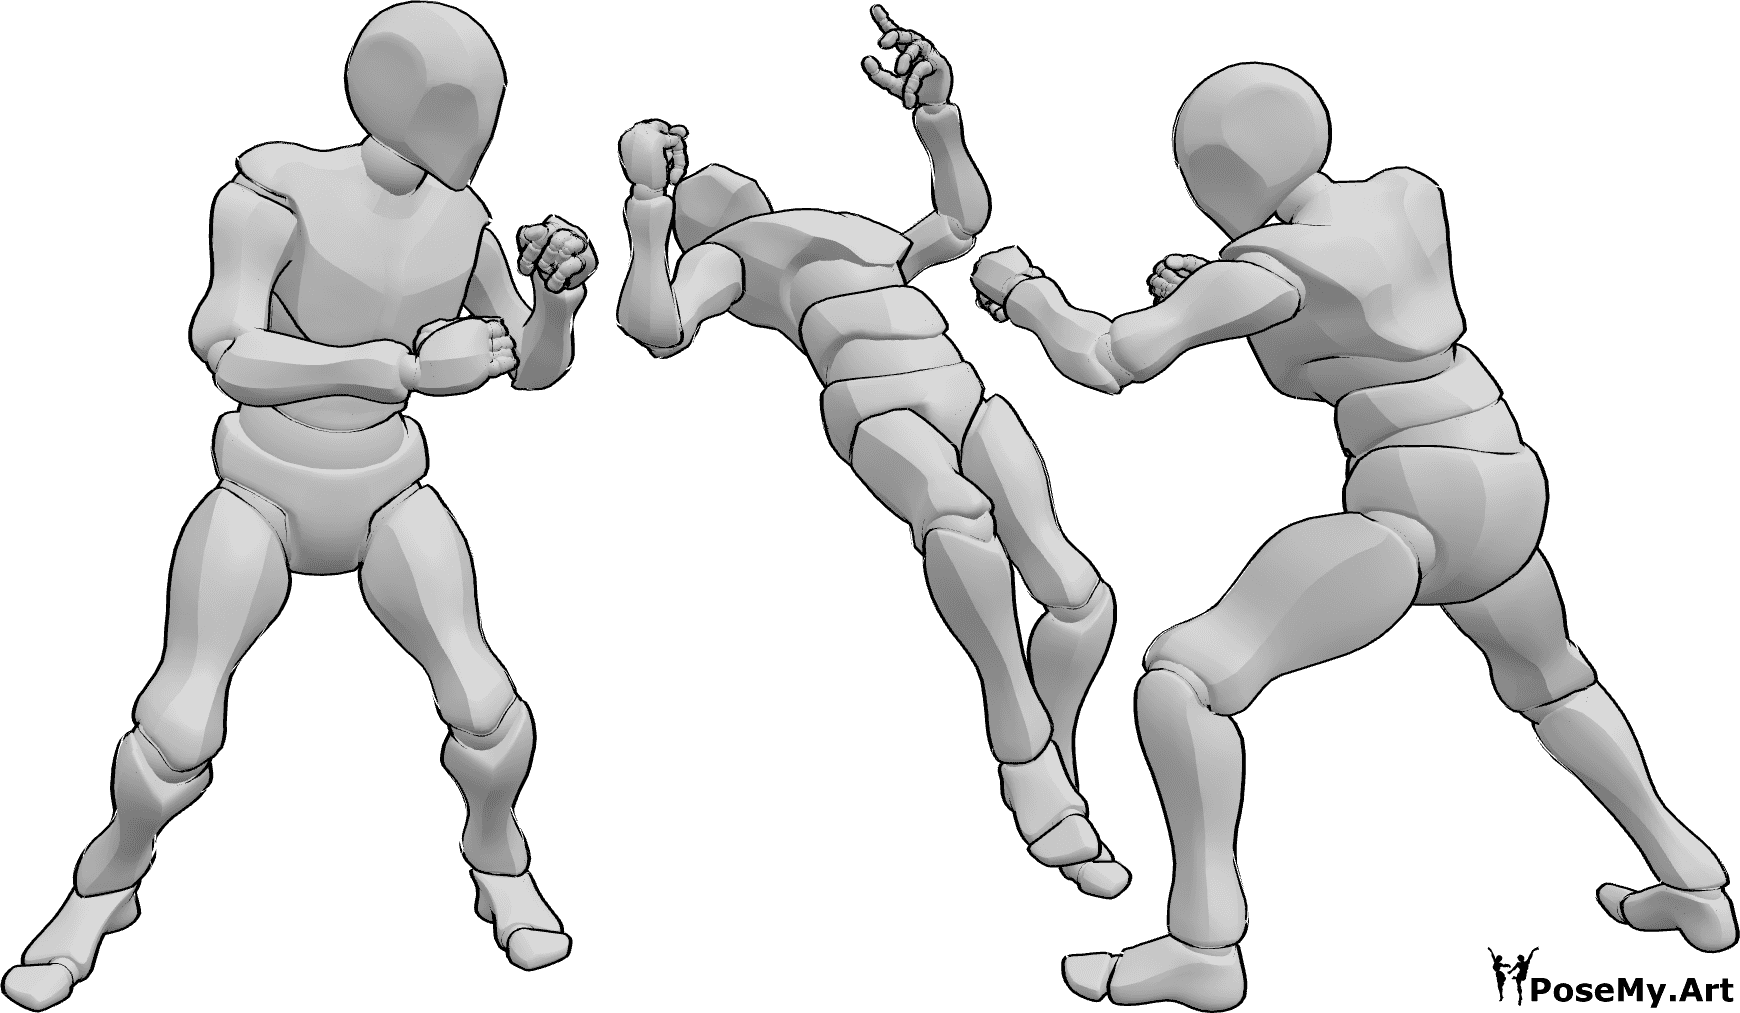 Riferimento alle pose- Tre maschi combattono in posa - Tre maschi stanno combattendo, uno di loro cade